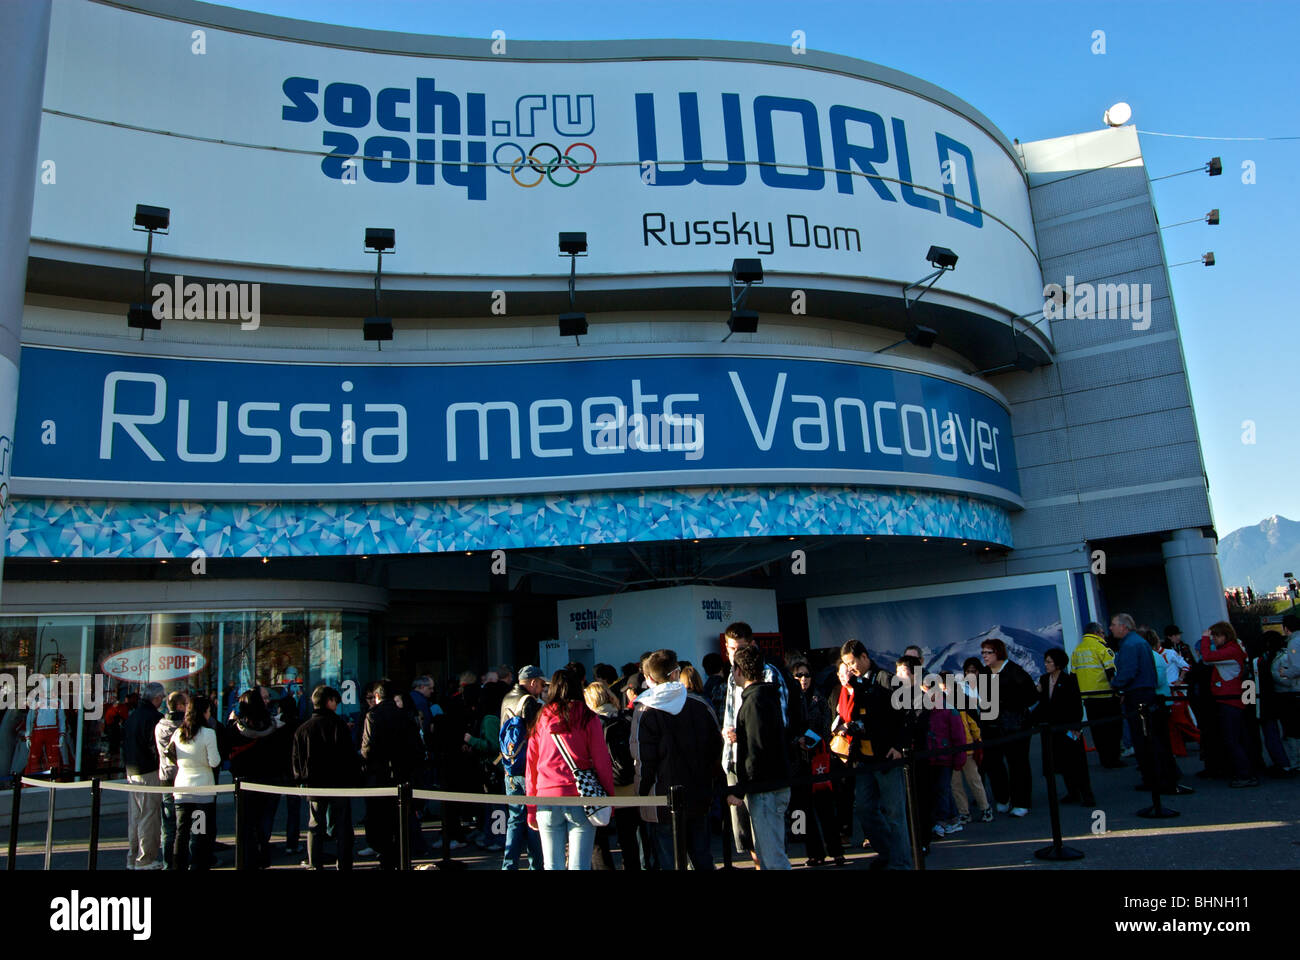 Großes Schild über Masse auf Russland Haus Förderung der russischen Olympia-Gelände in Sotschi 2014 während der Olympischen Winterspiele 2010 Vancouver Stockfoto